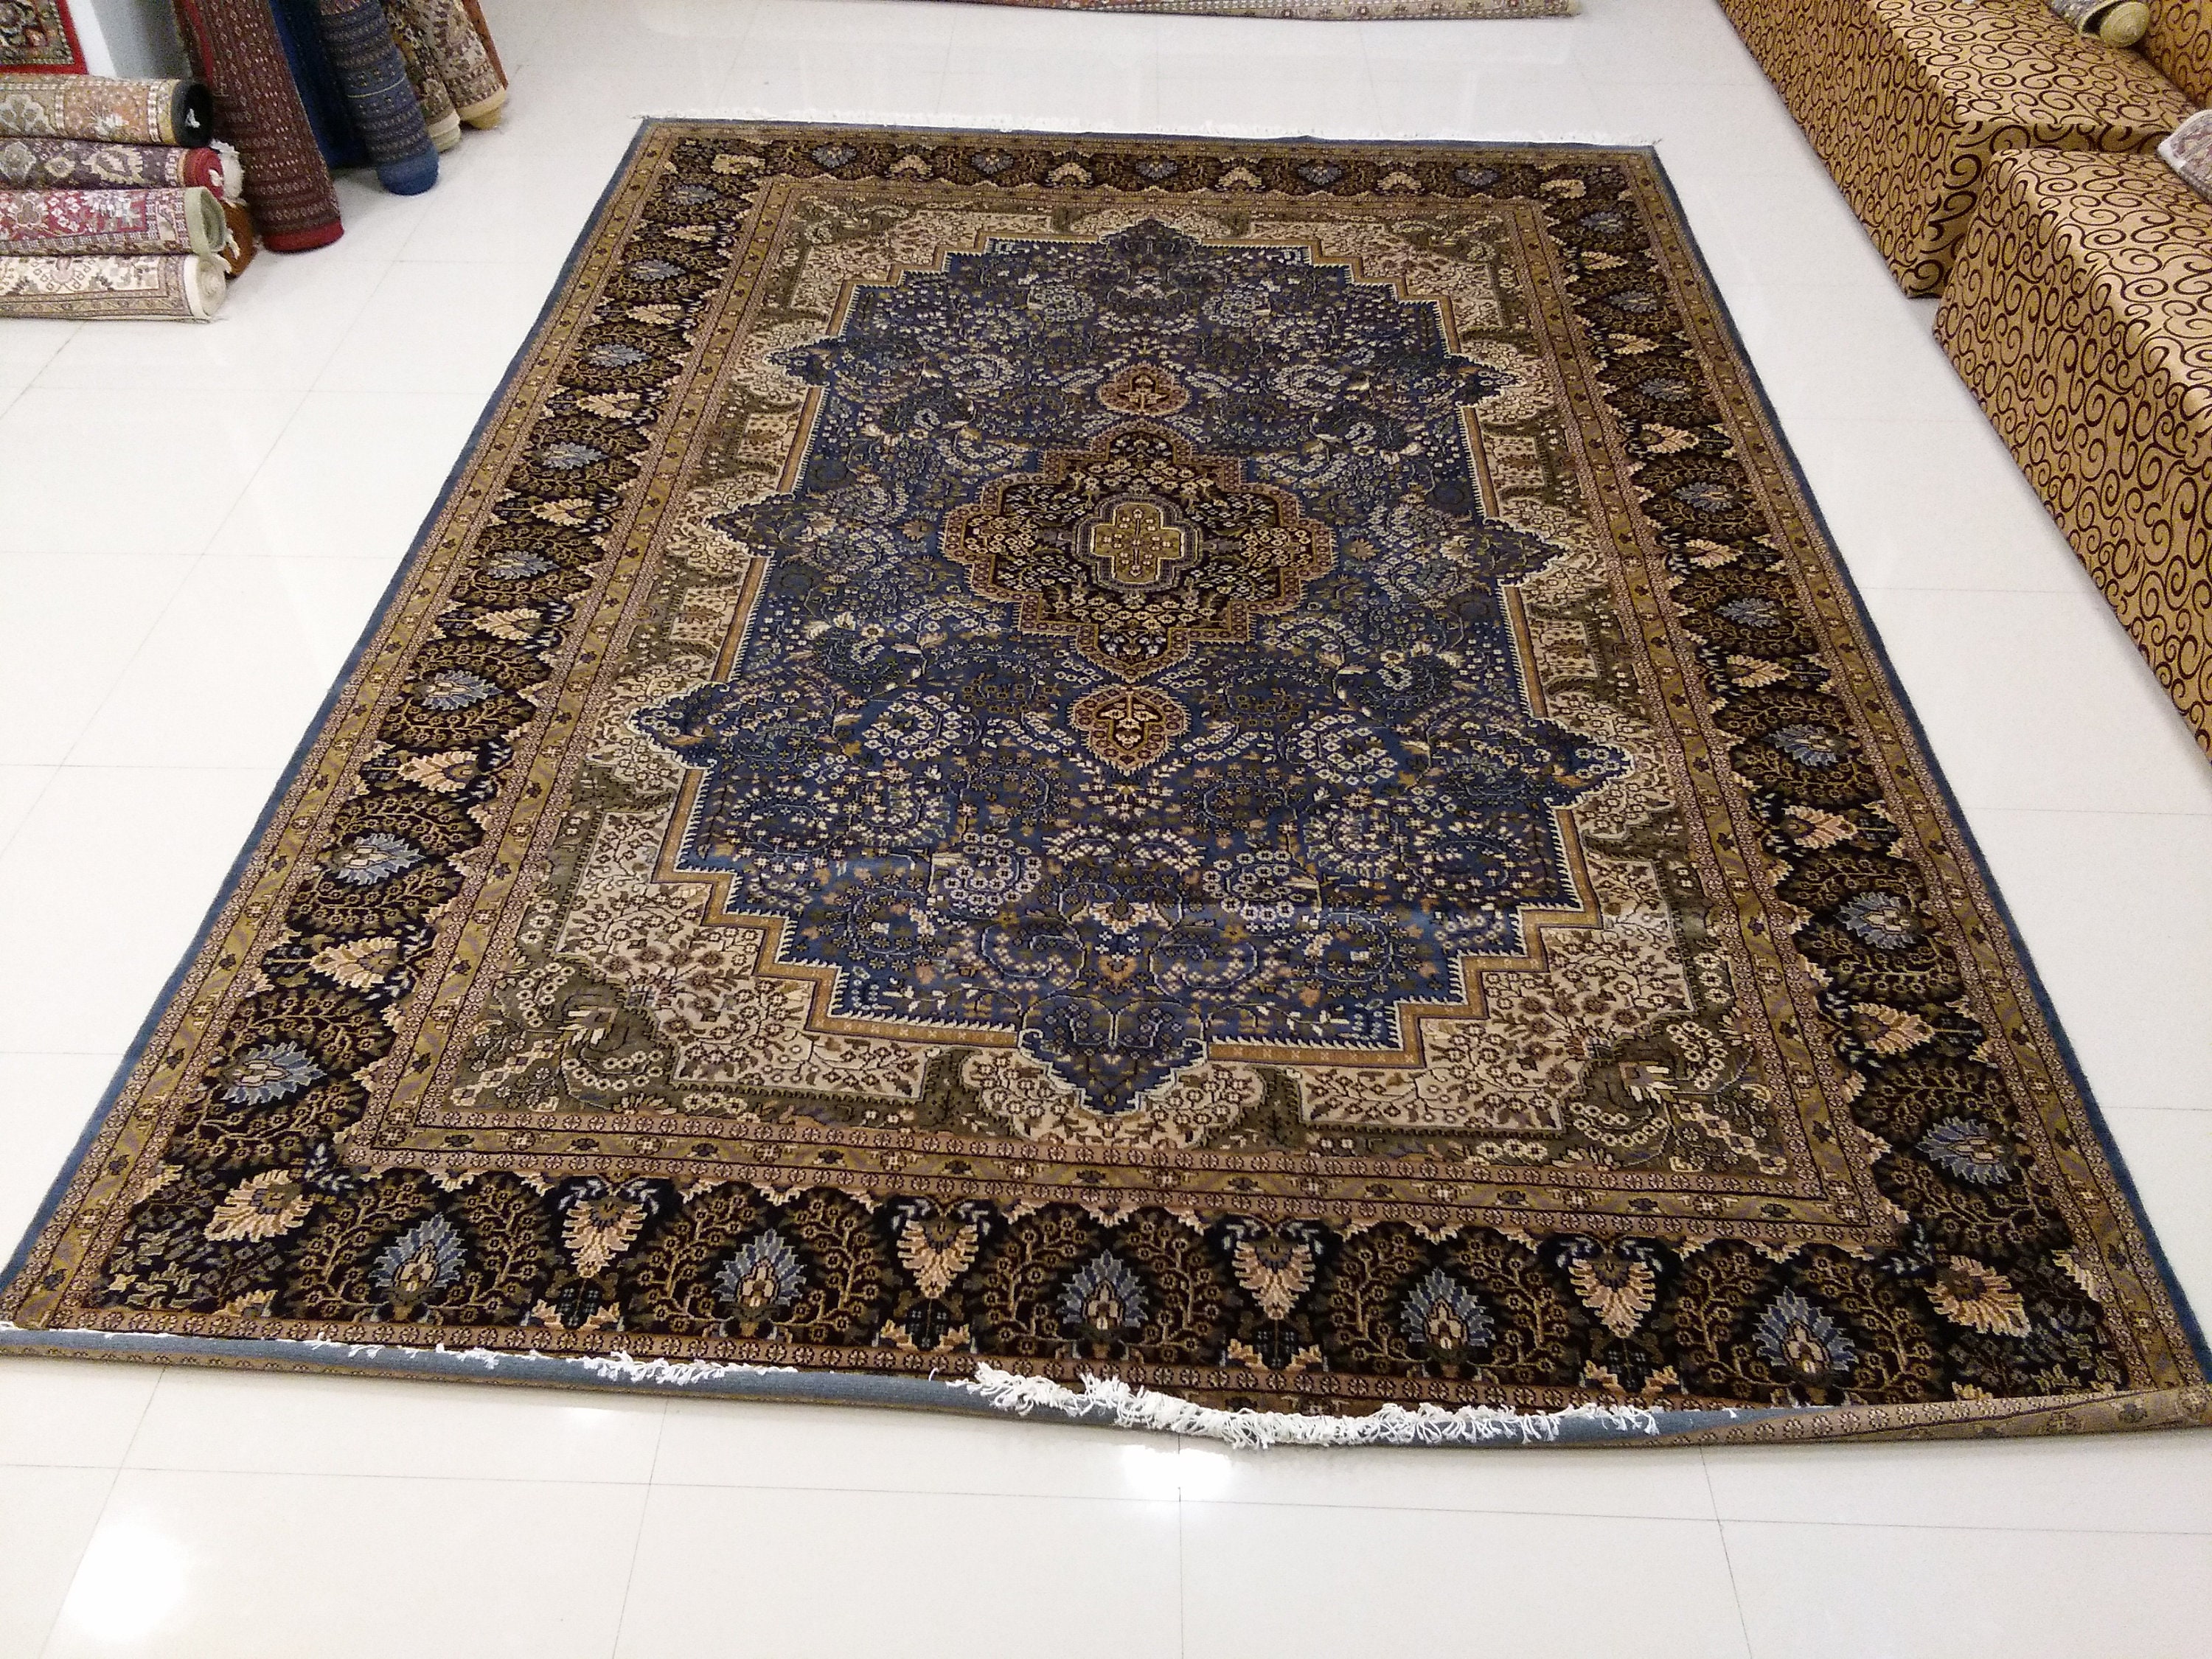 Indian Handmade Kashan Persian Carpet Traditional Wool Carpet | Etsy